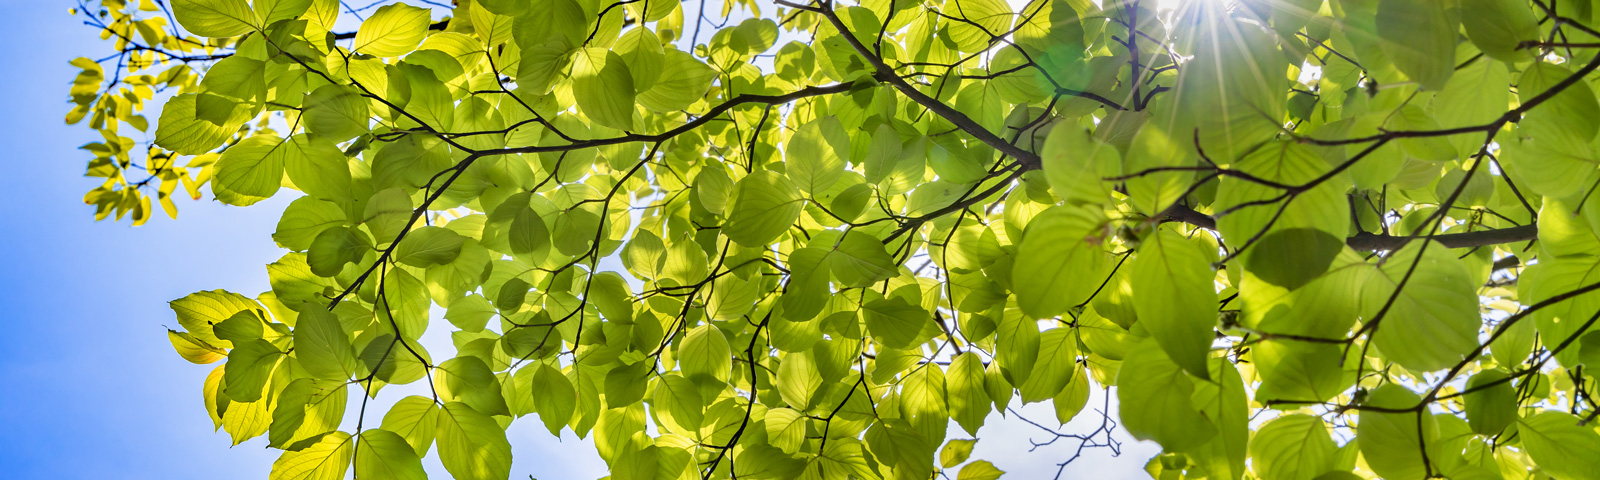 Druckmedien Umwelt CSR Rating - Blick in grüne Baumkrone und blauen Himmel